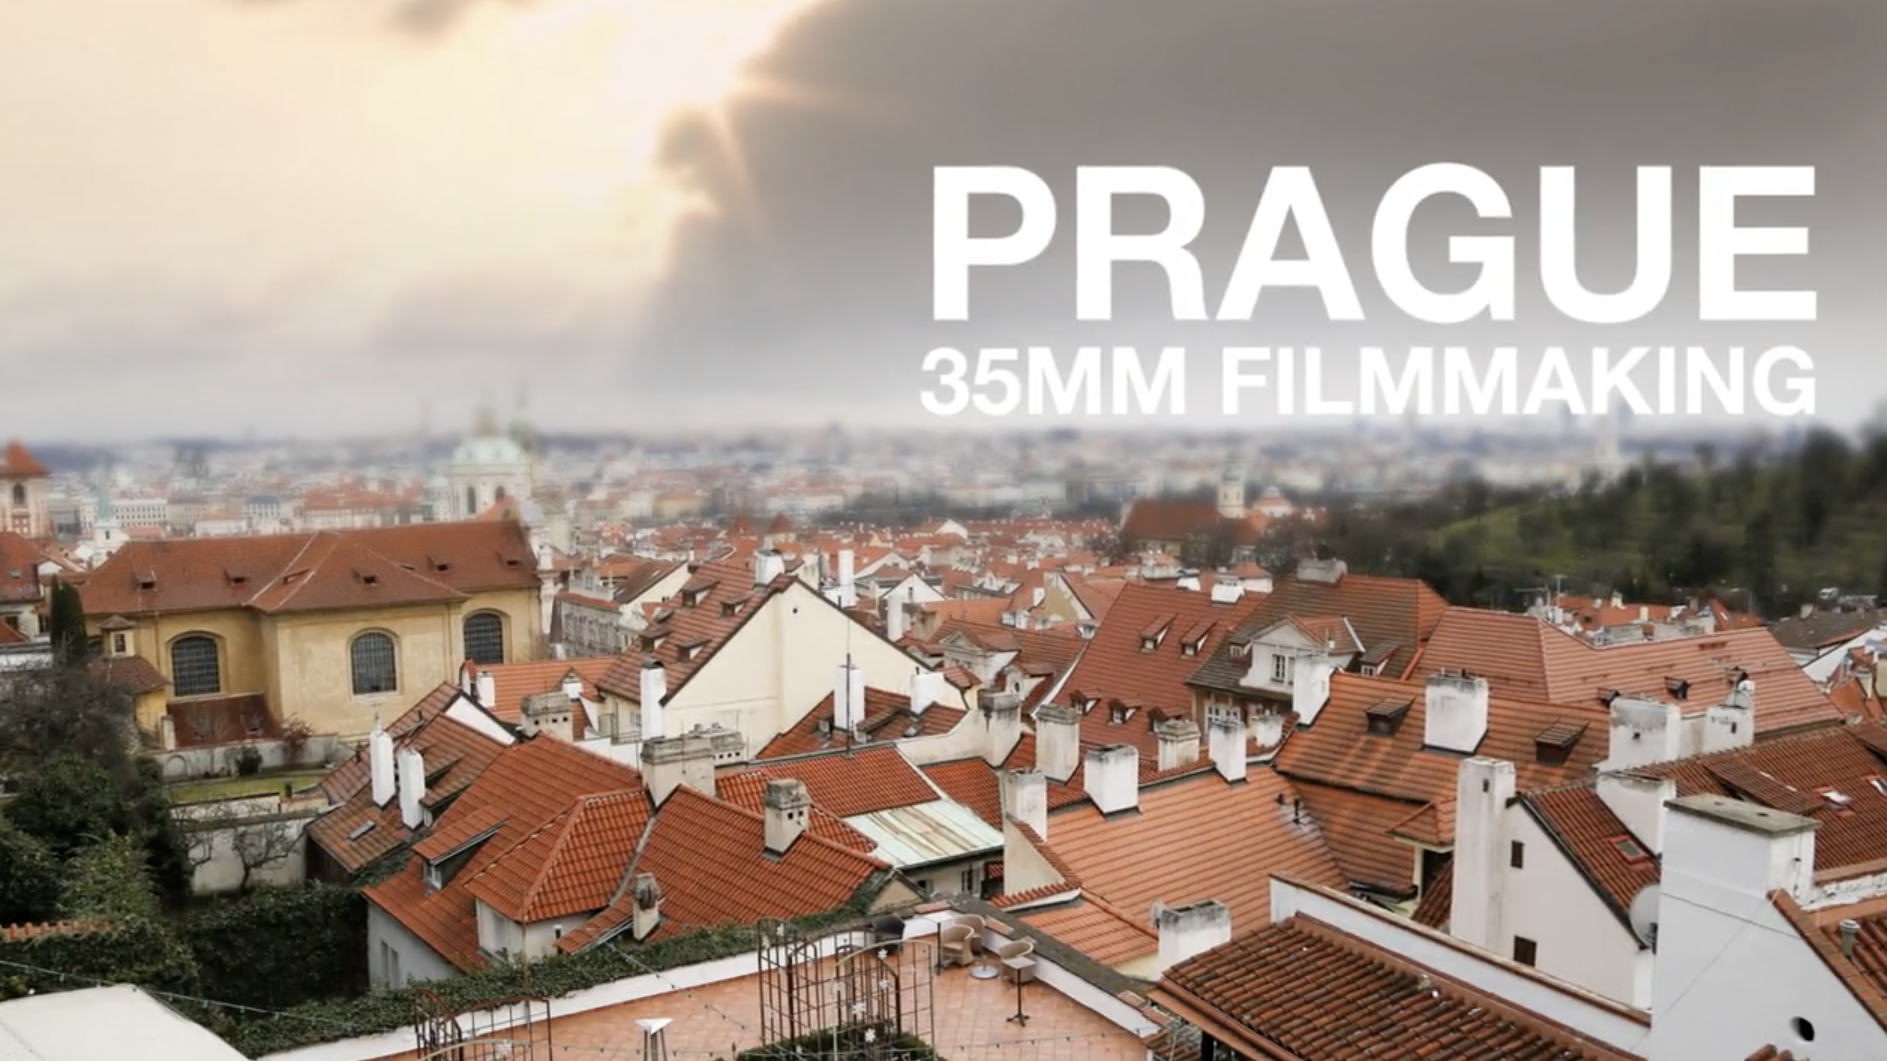 35mm Filmmaking in Prague